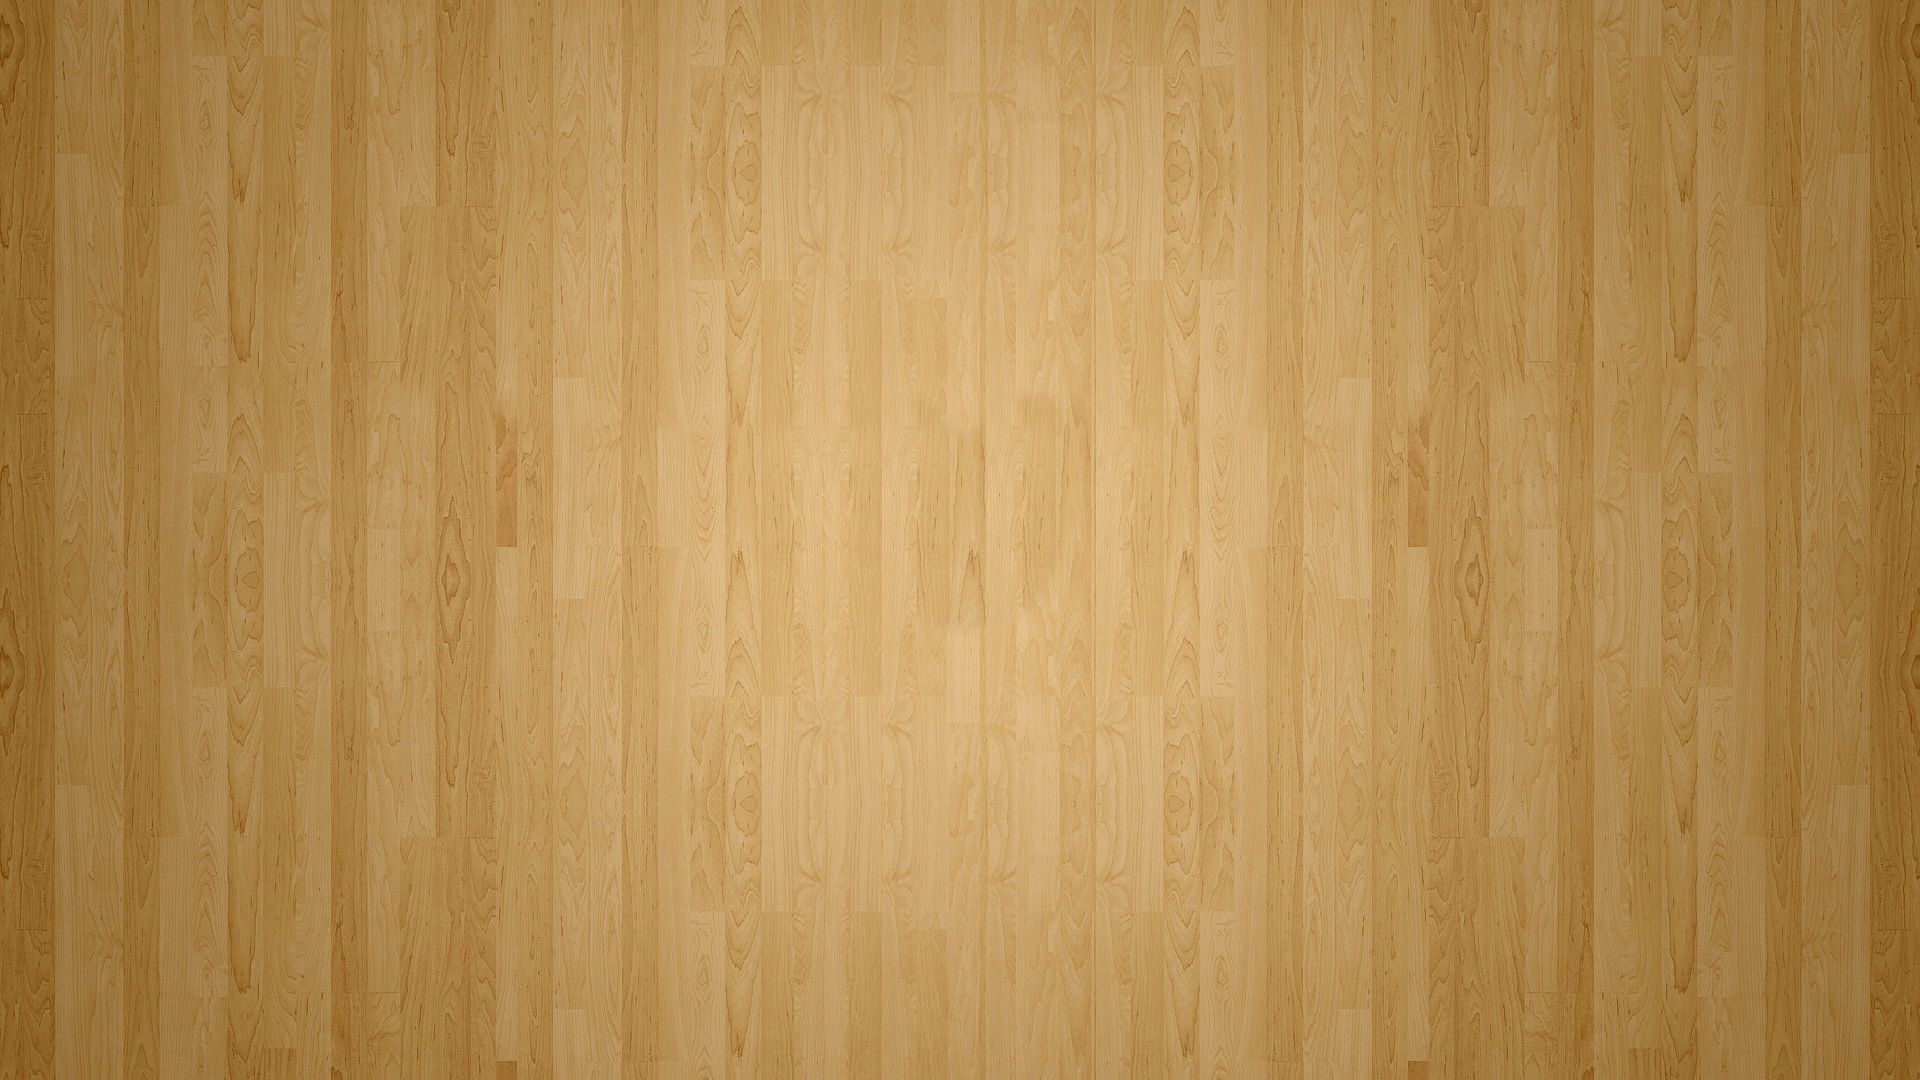 hardwood wallpaper,wood,plywood,wood stain,brown,wood flooring